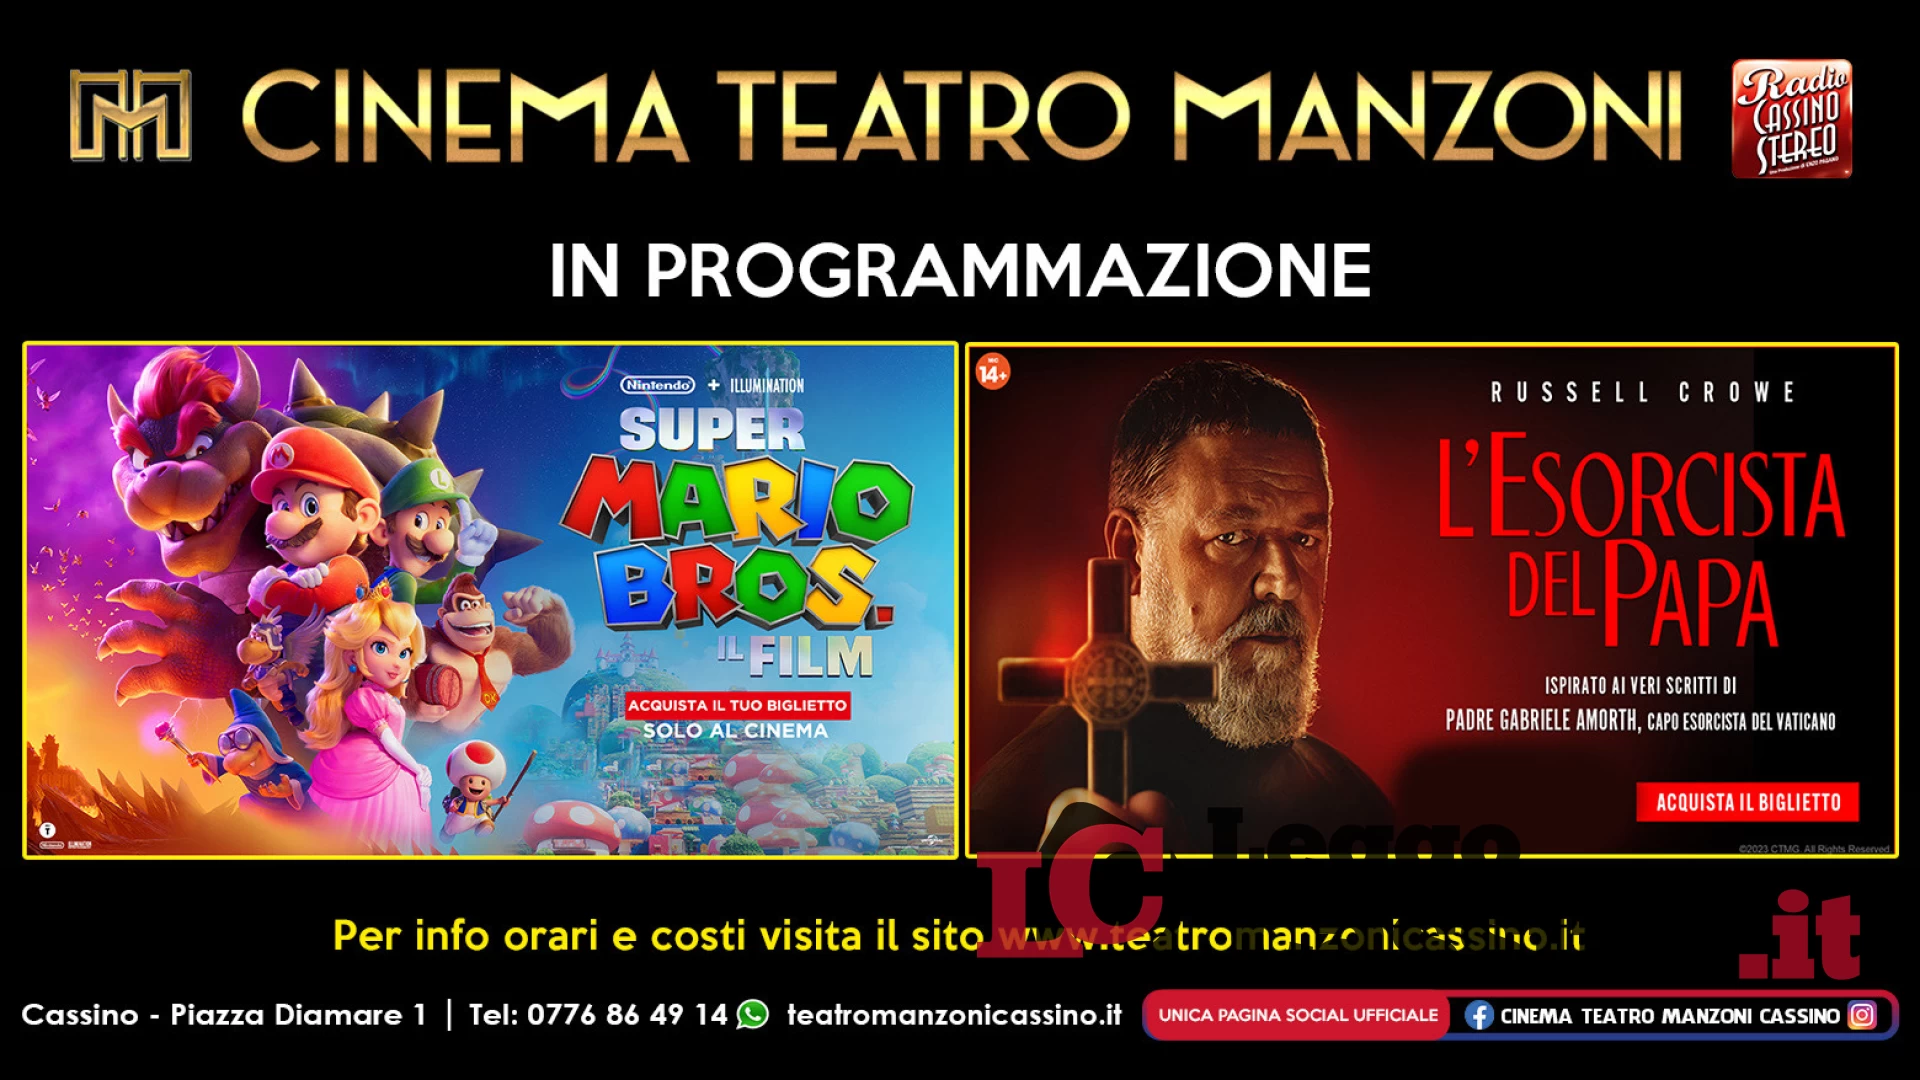 Al Cinema Teatro Manzoni di Cassino arriva "L'Esorcista del Papa"